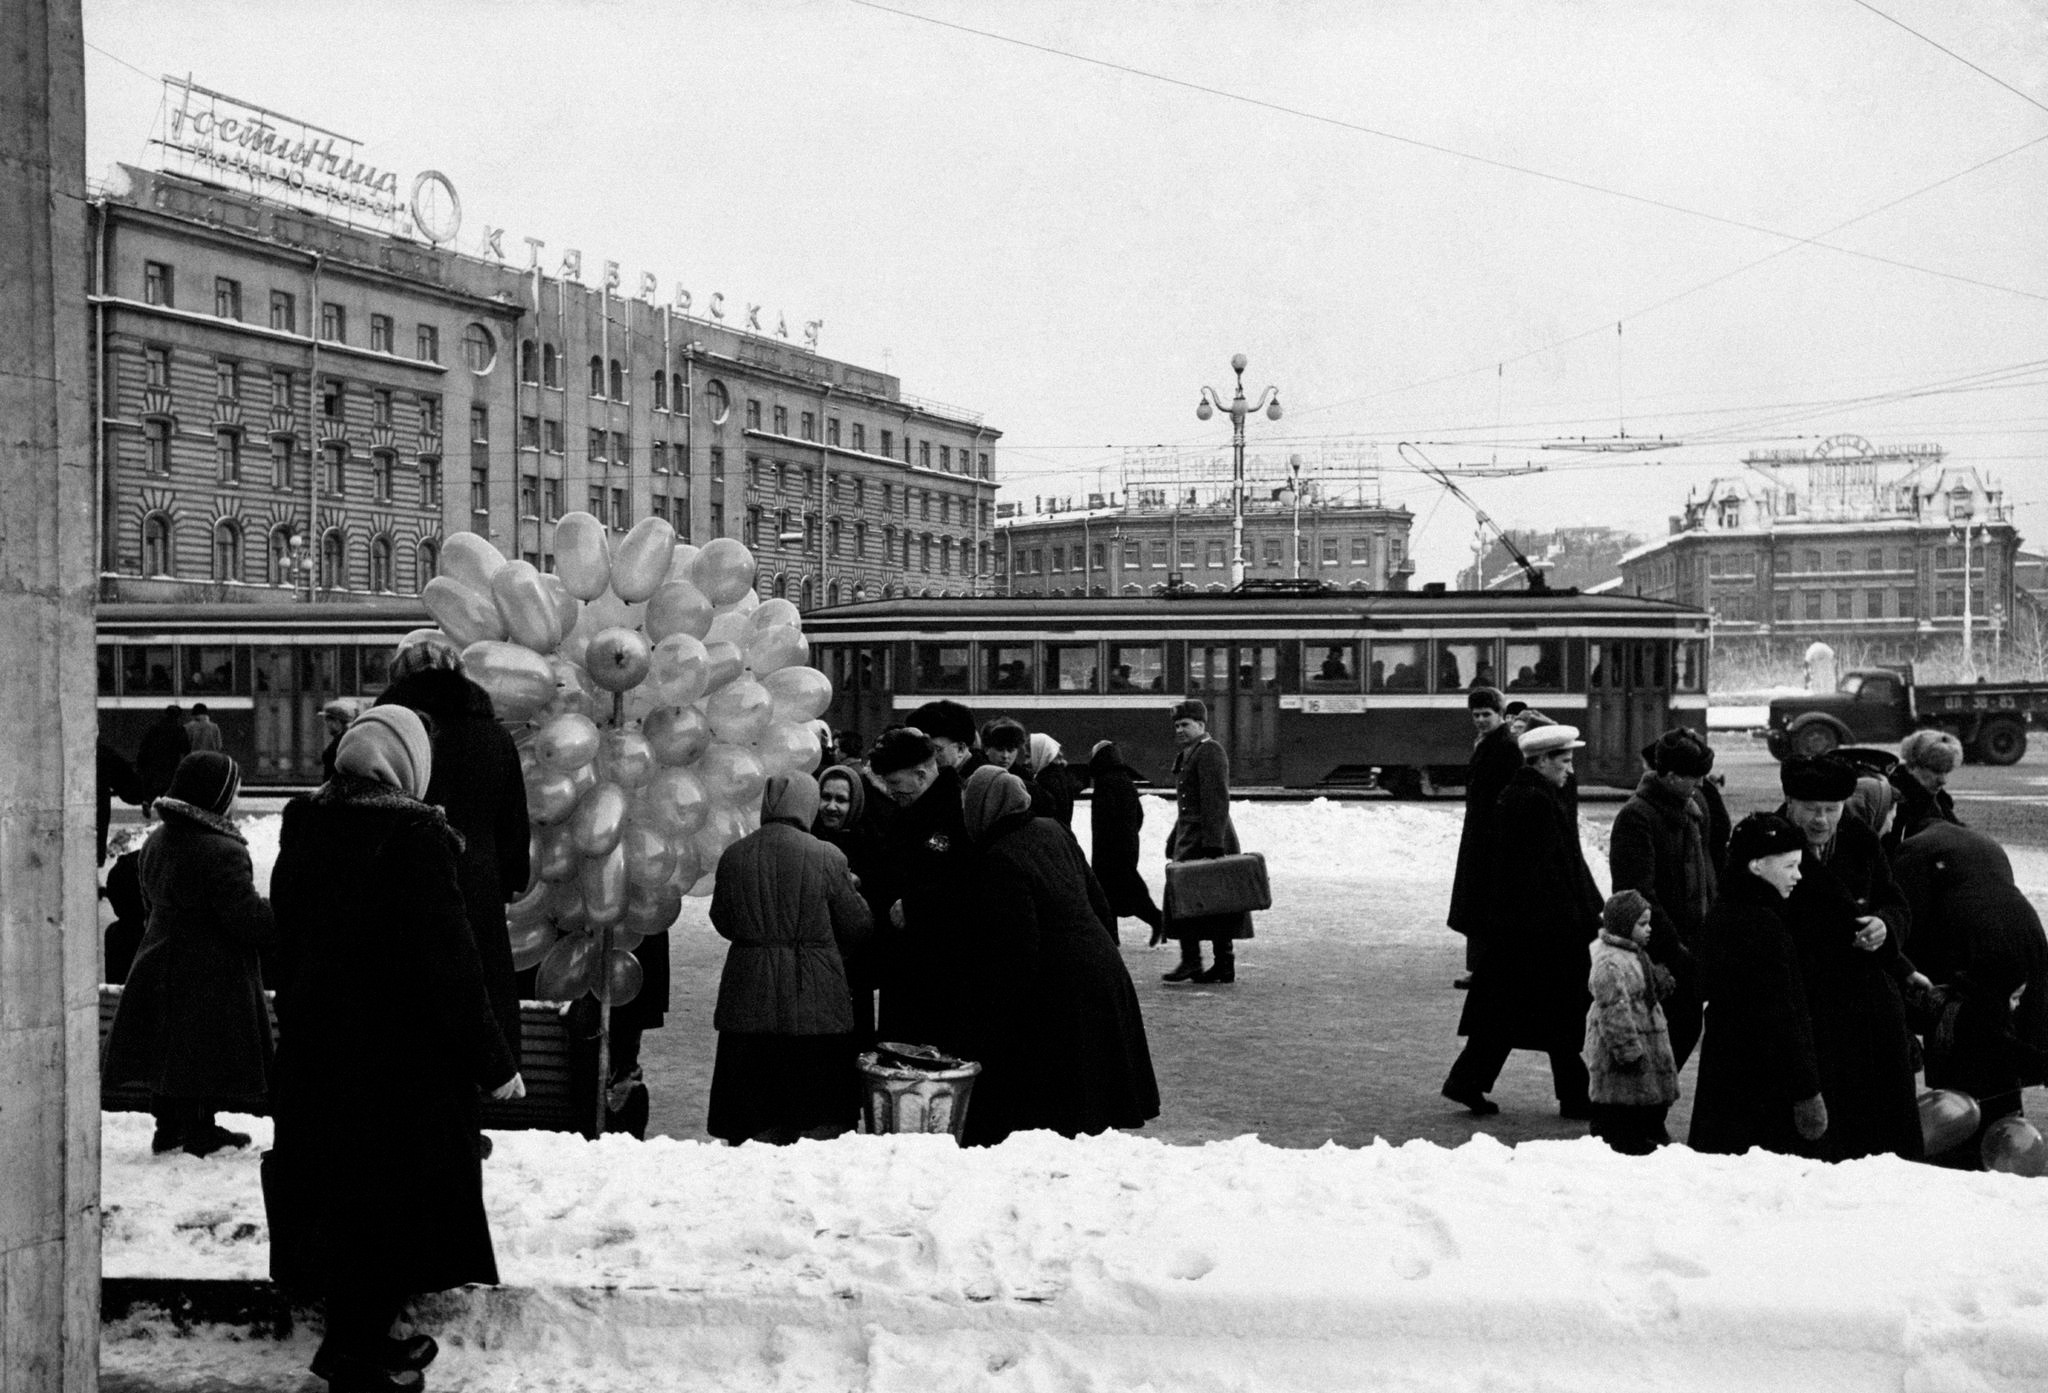 Гостиница Октябрьская, Ленинград, 1960-е. Фотограф Марио Де Бьязи